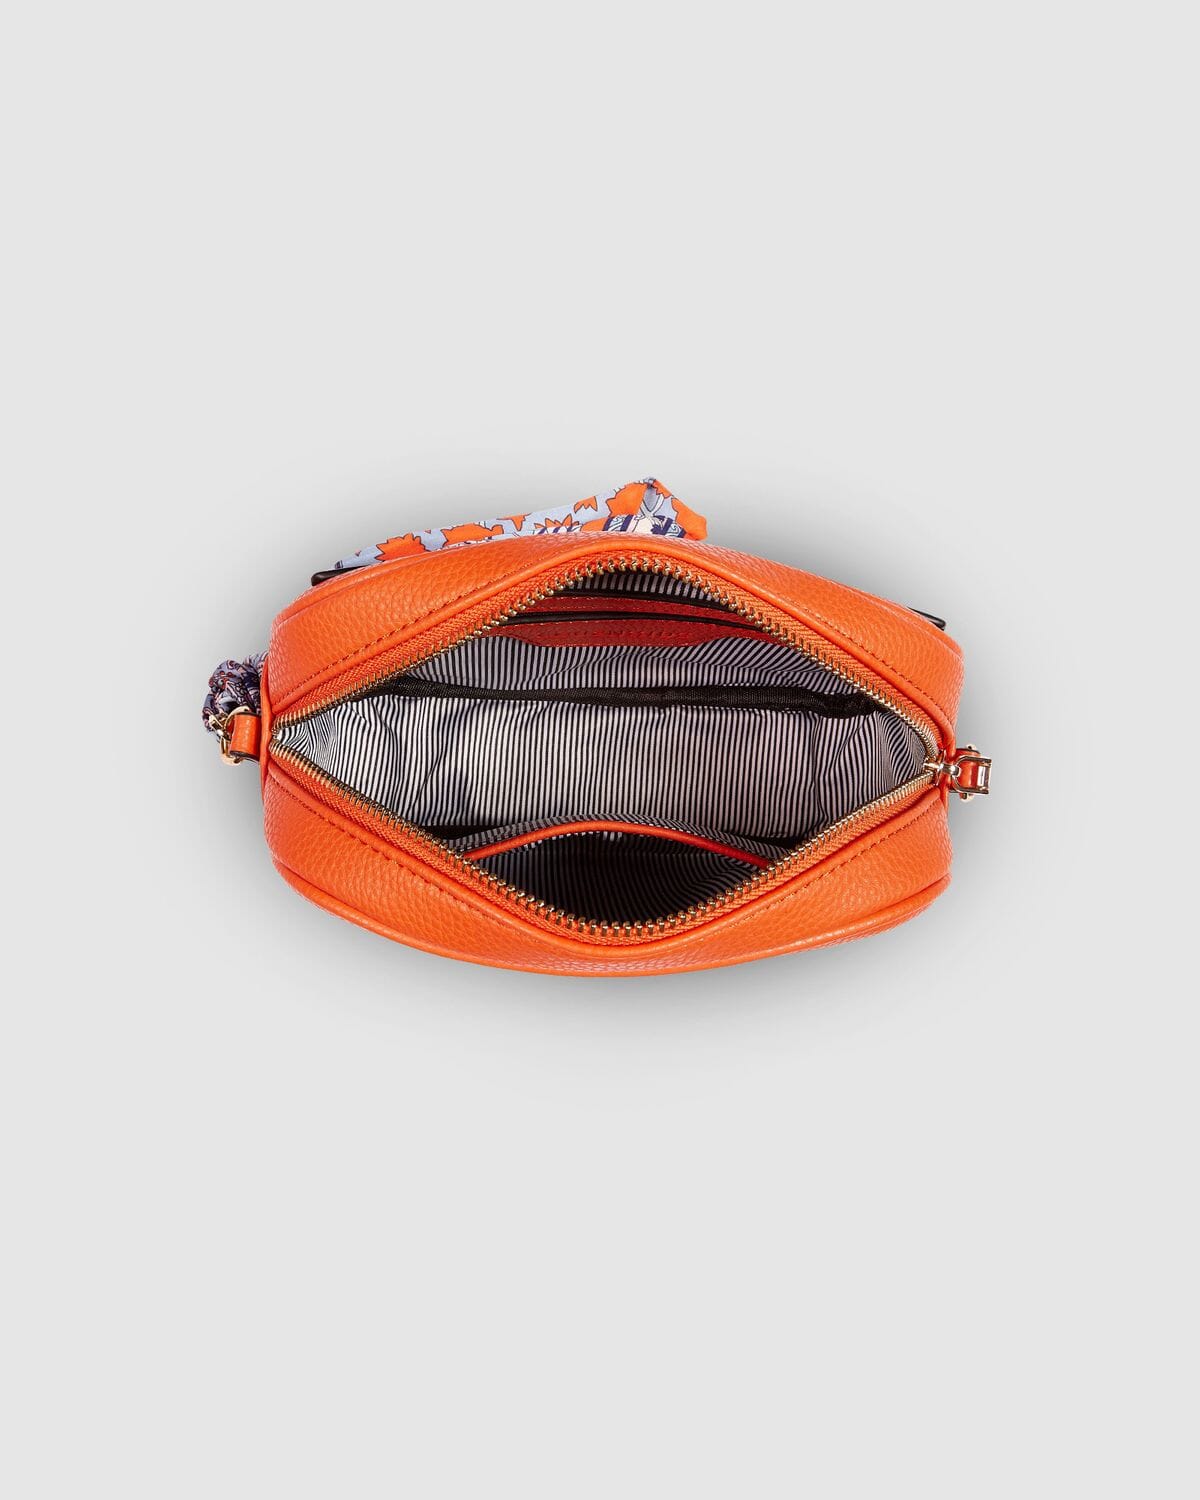 kate spade | Bags | Kate Spade Light Orange Dotted Leather Shoulder Bag  Purse | Poshmark